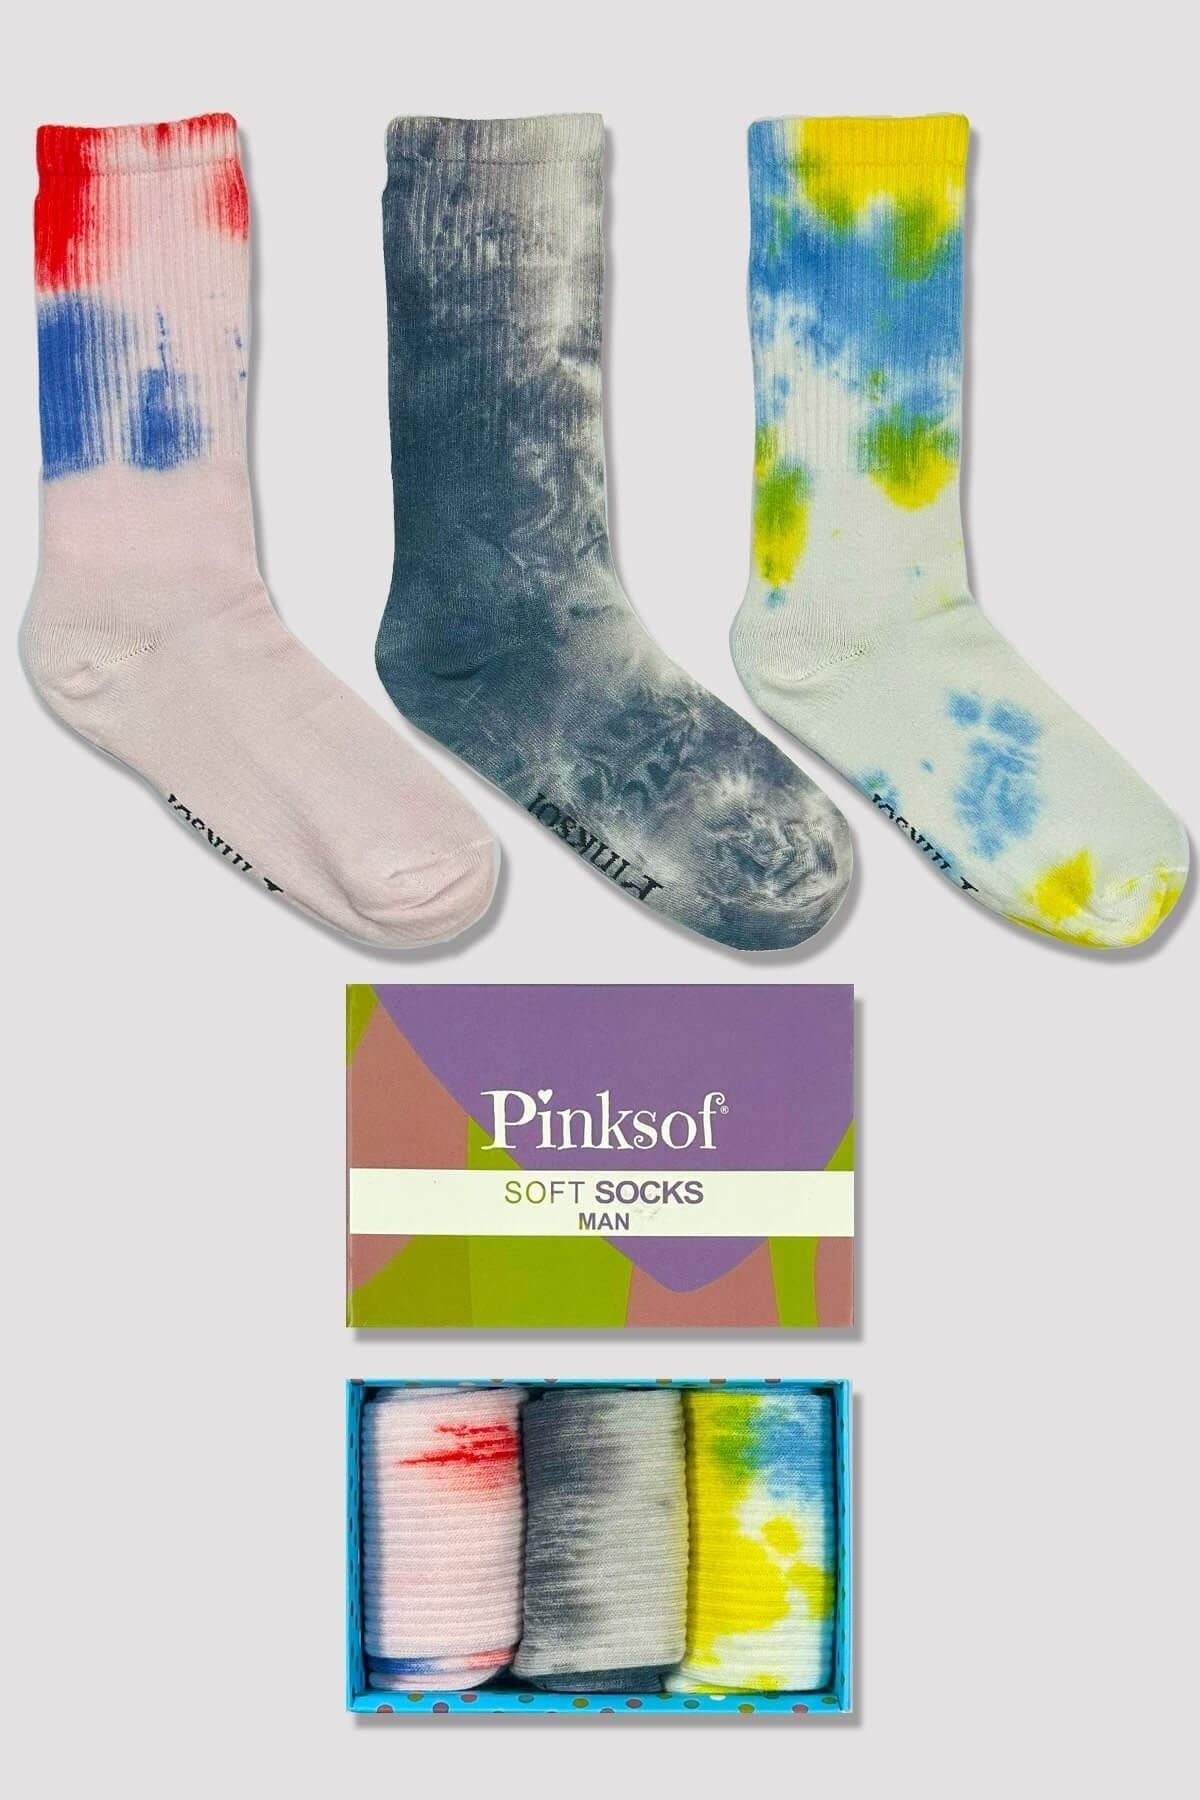 Pijamaevi Kutulu 3 Çift - Batik Desenli - Erkek Soket Çorap - Kokulu Kaliteli